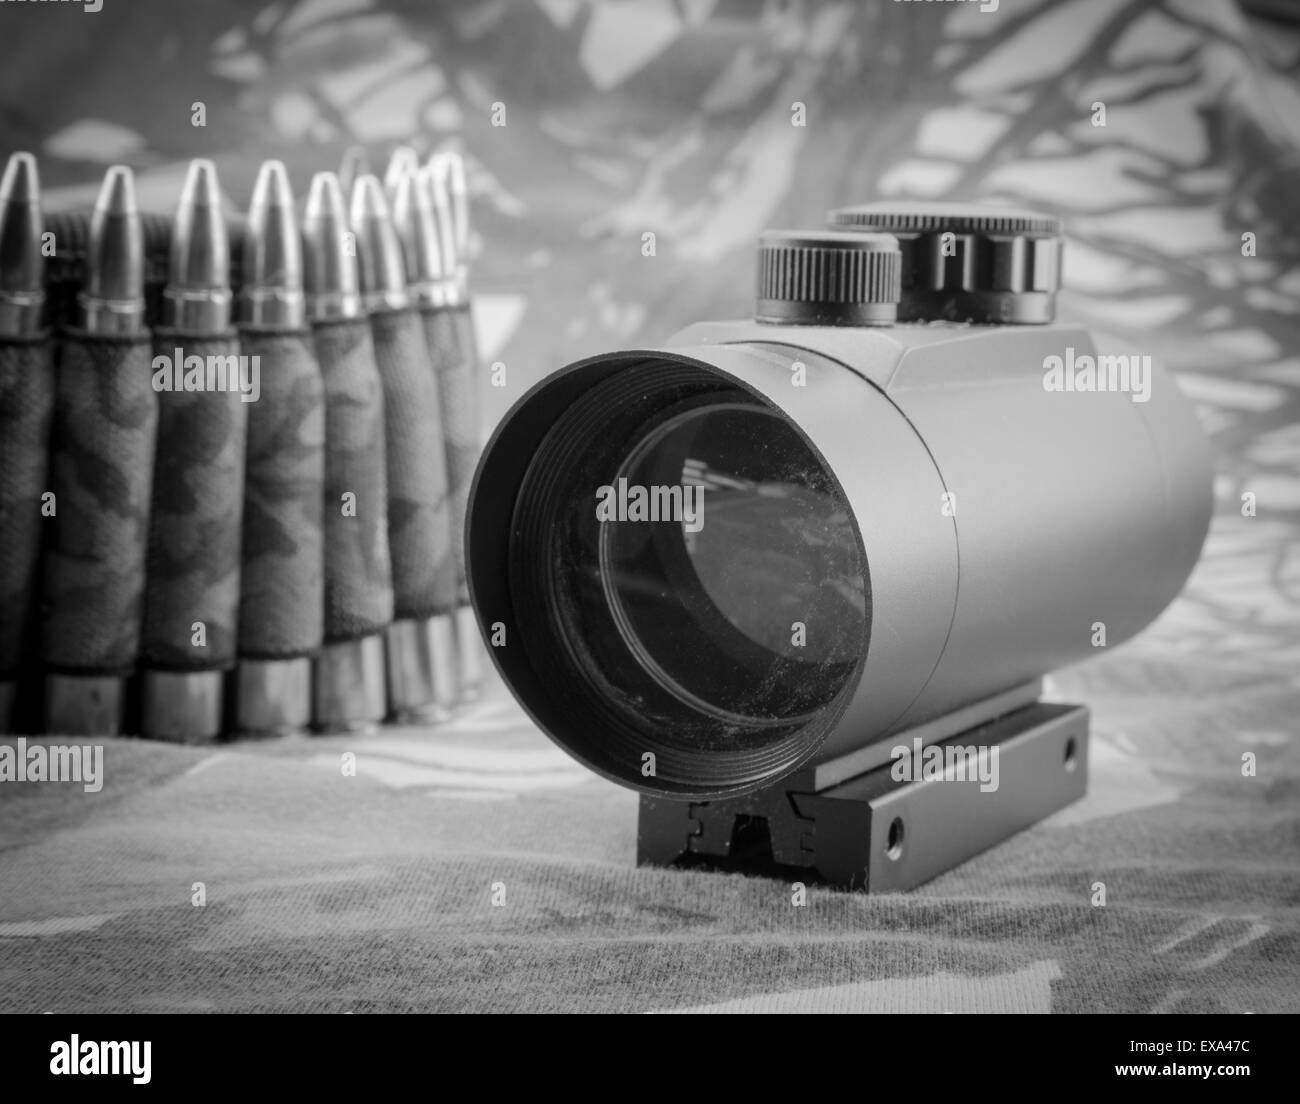 Composizione con fucile e munizioni red dot sight Foto Stock